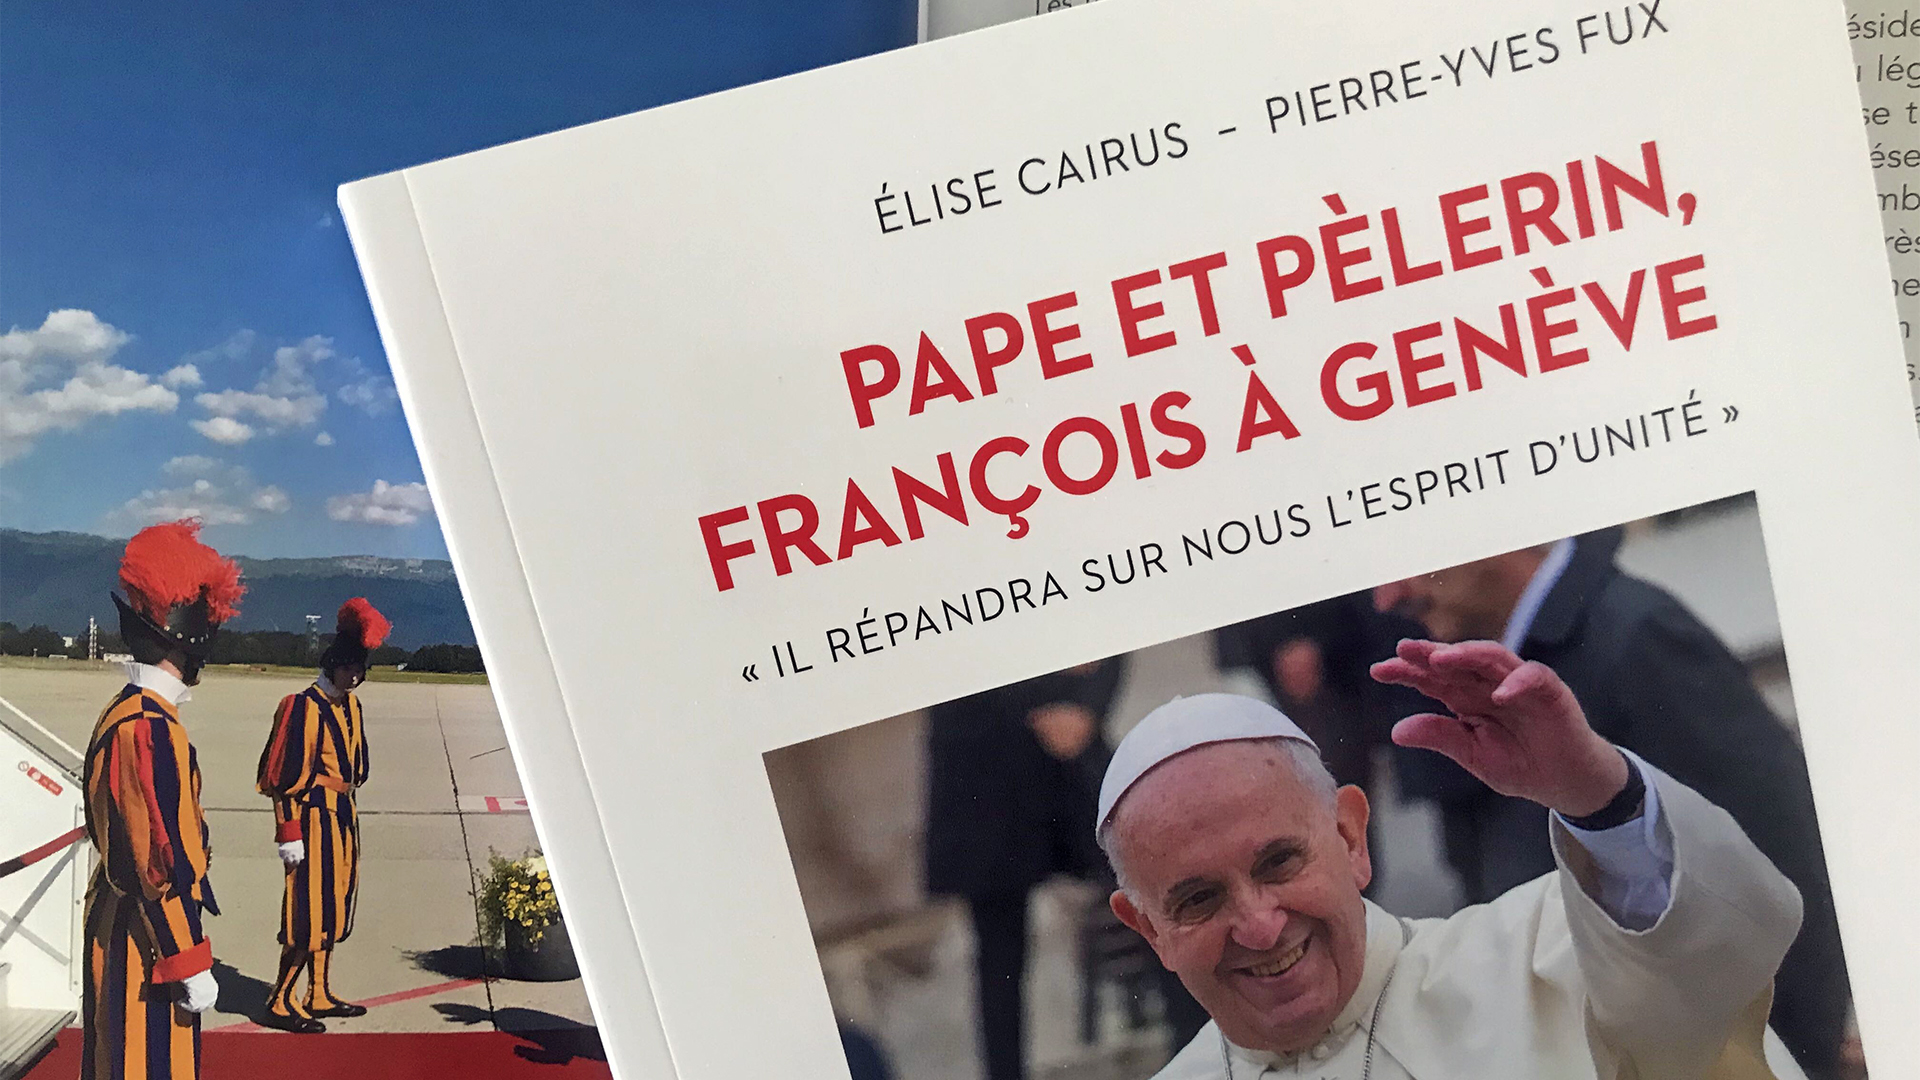 Pierre-Yves Fux et Elise Cairus pour un livre à quatre main sur la visite du pape à Genève en 2018 | © Pierre-Yves Fux